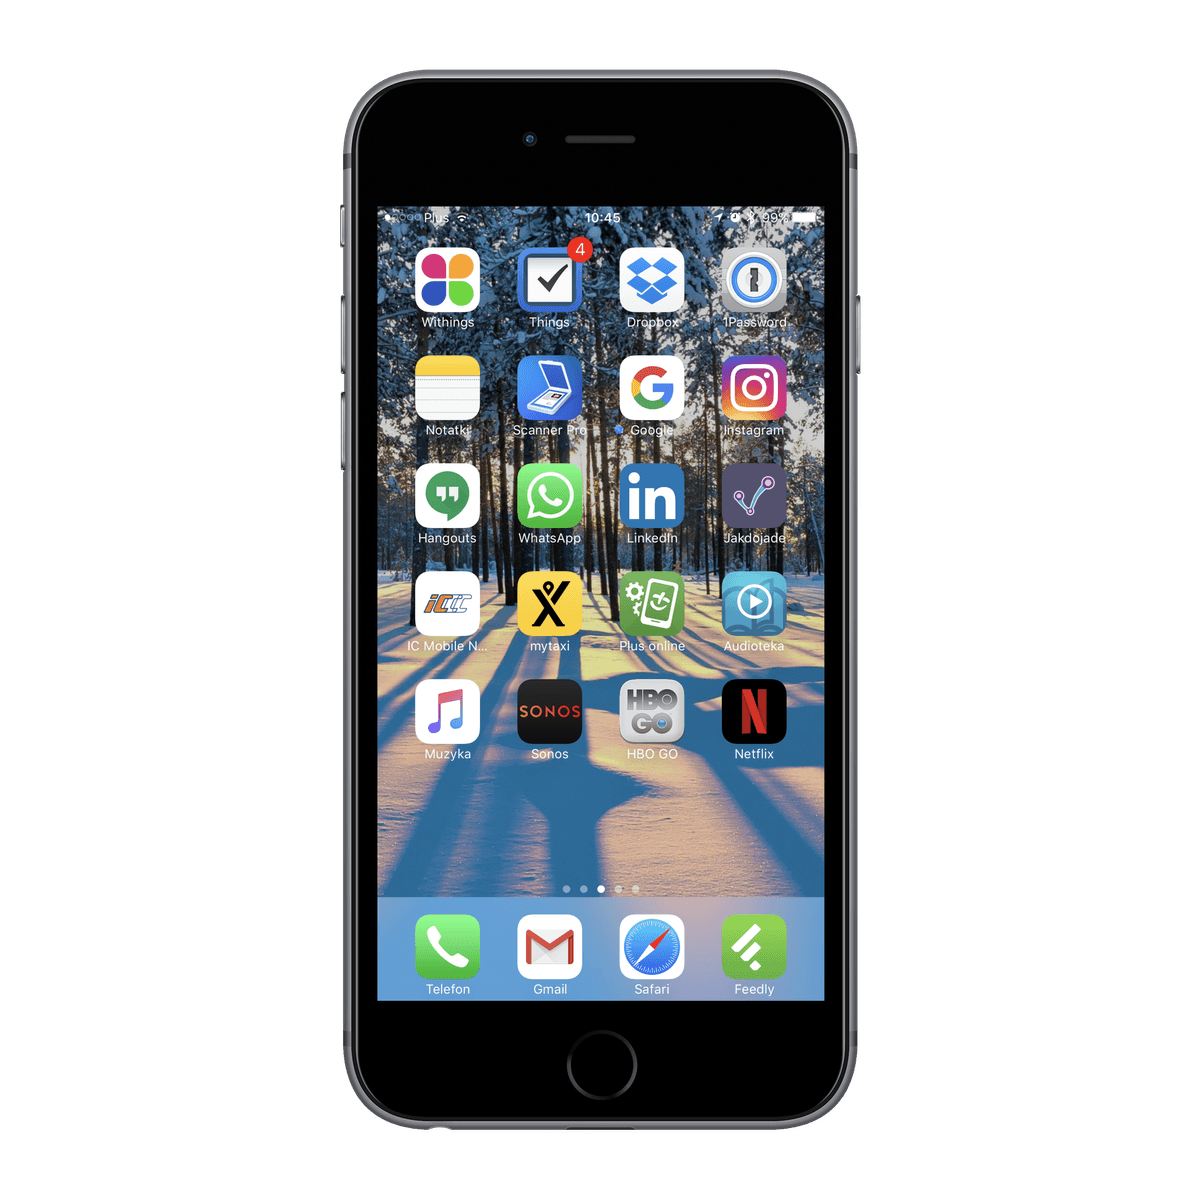 iPhone - najlepsze aplikacje mobilne class="wp-image-535878" title="iPhone - najlepsze aplikacje mobilne" 